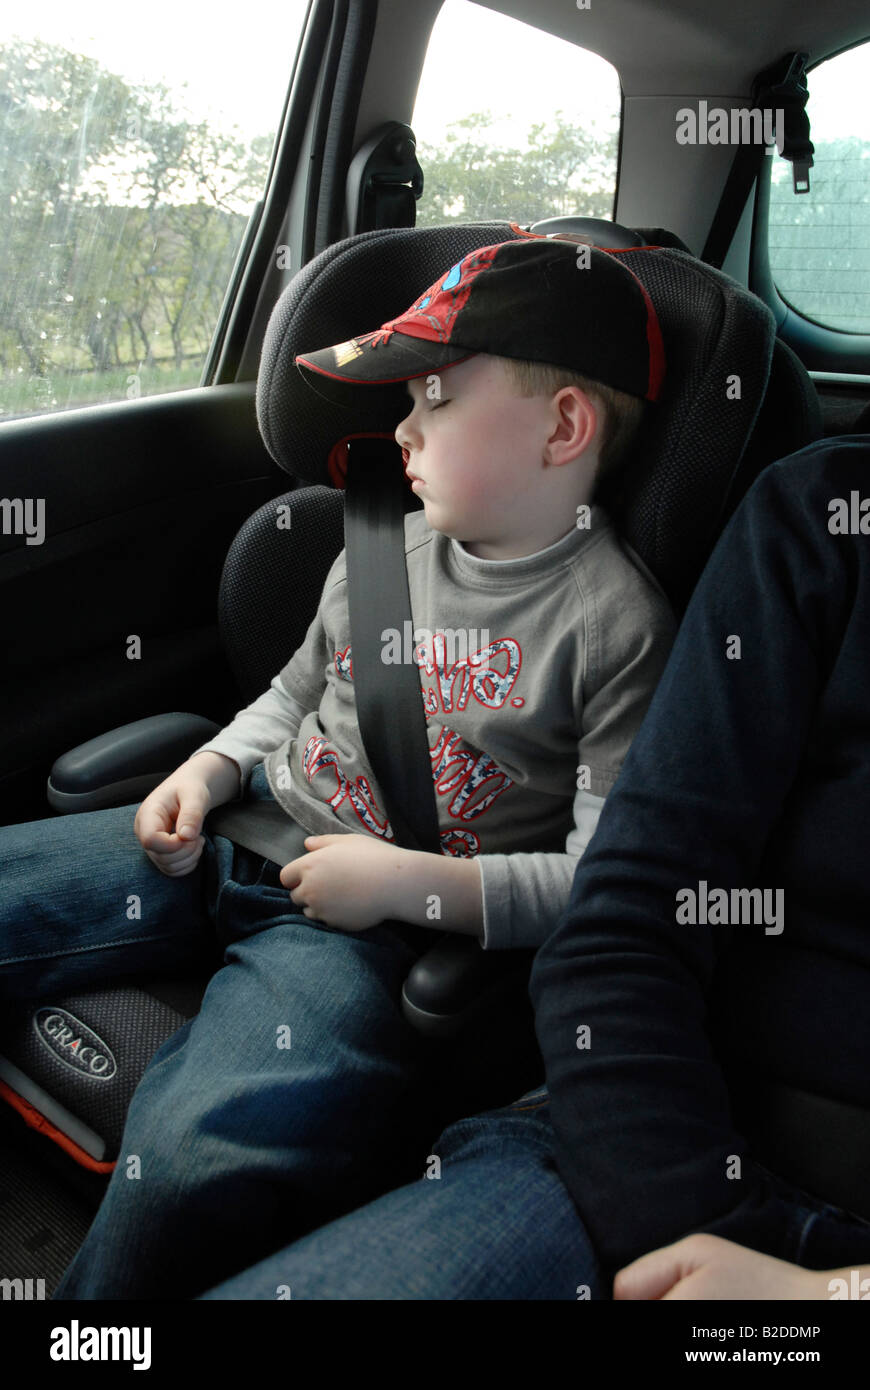 Bruder und Schwester (6-7) (8-9) schlafen im Auto Stockfotografie - Alamy